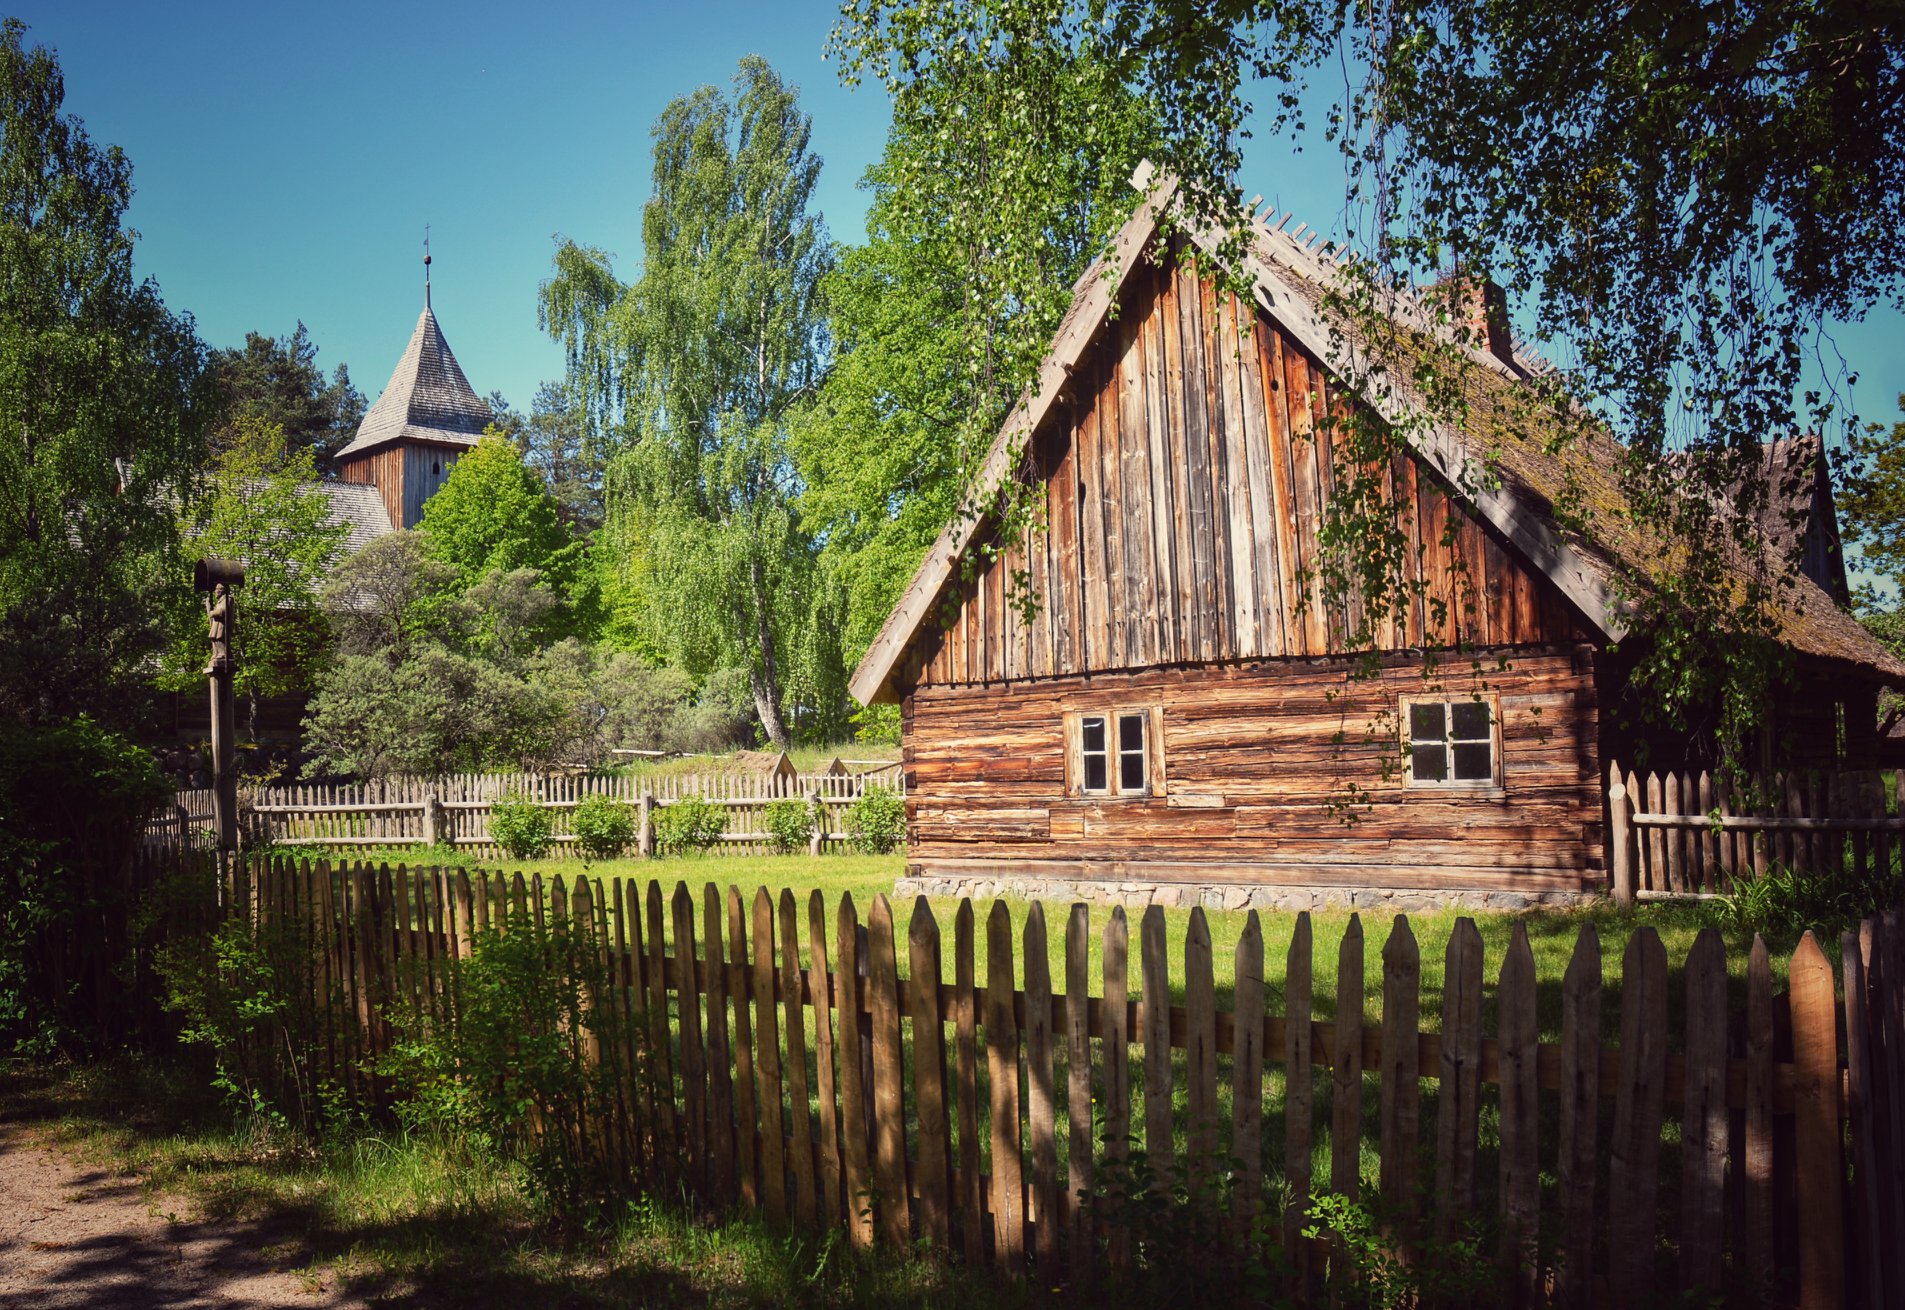 Widok na zabudowę skansenu we Wdzydzach Kiszewskich, Na pierwszym planie drewniana chata, w tle - kościół